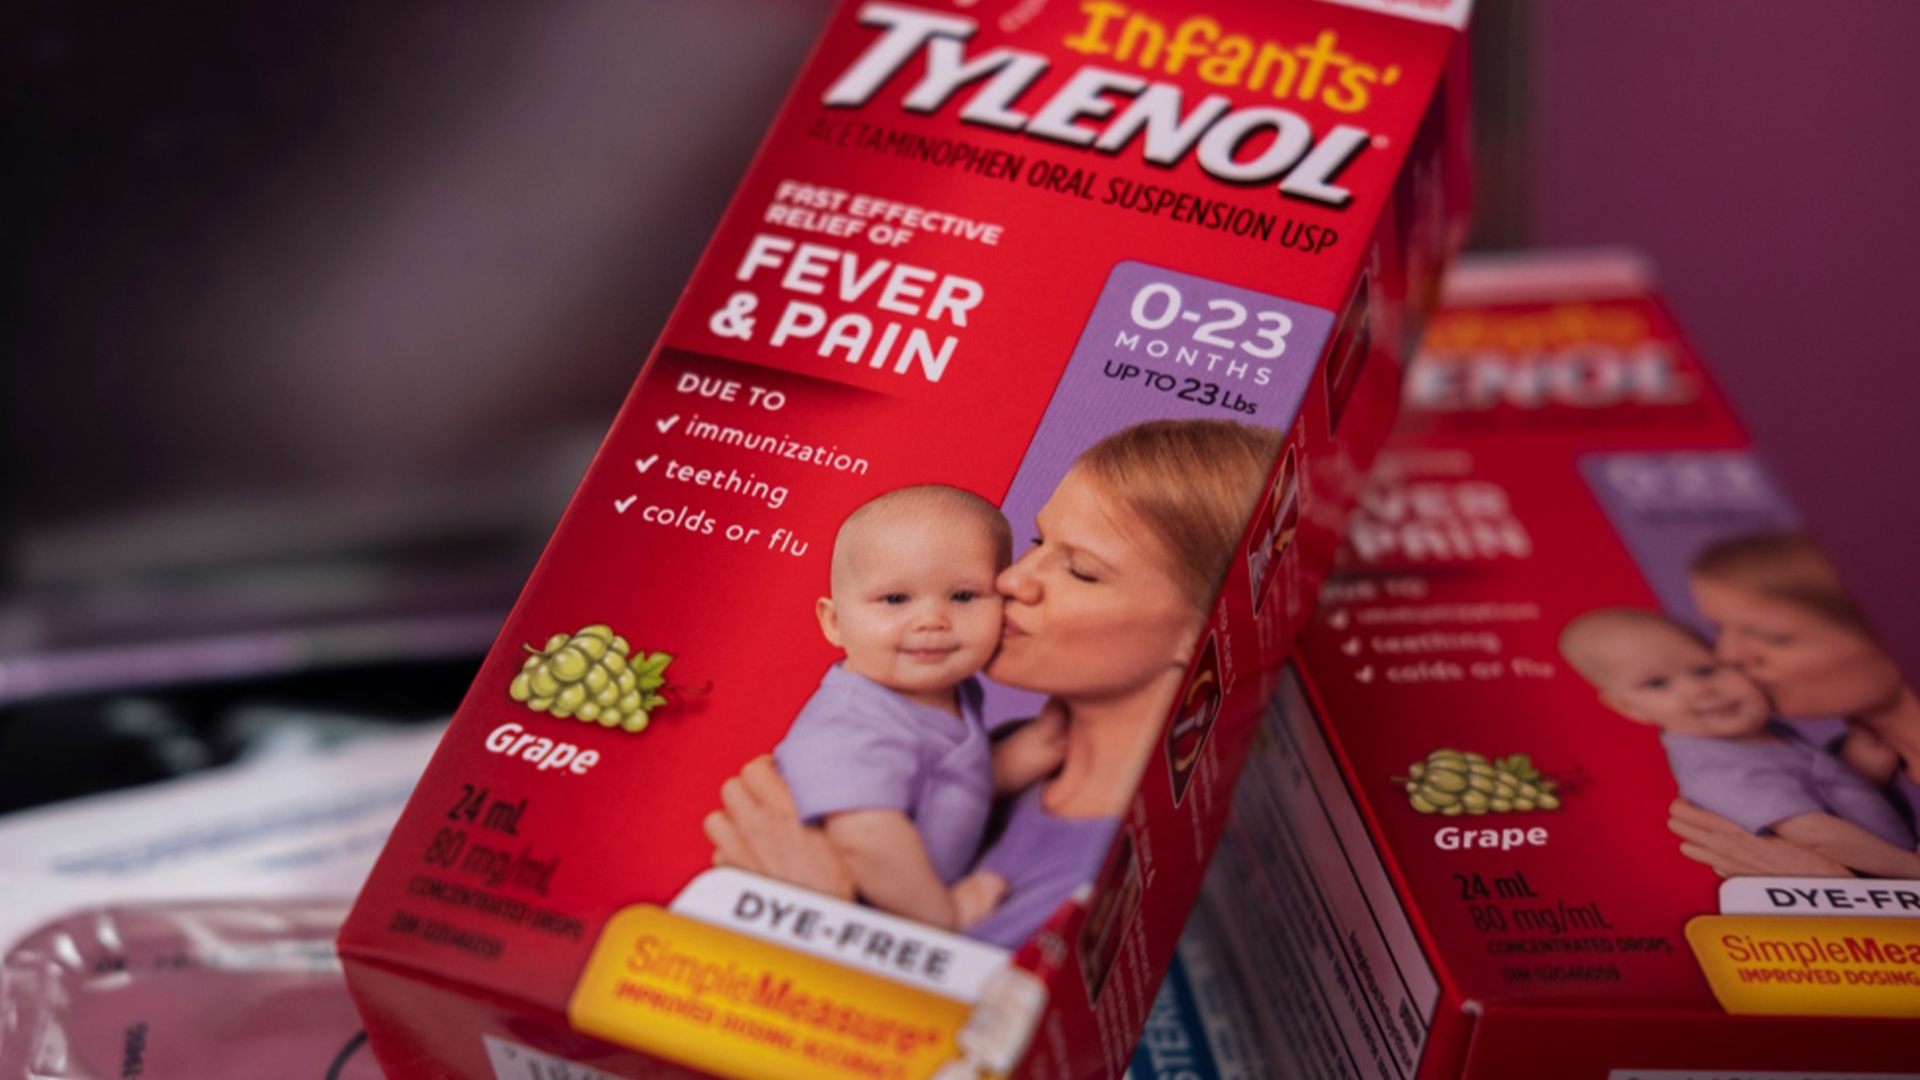 La pénurie actuelle de médicaments pour des enfants a forcé plusieurs parents à trouver des moyens extrêmes afin de soulager la fièvre et la douleur de leur enfant, surtout avec l’arrivée de la saison de la grippe.